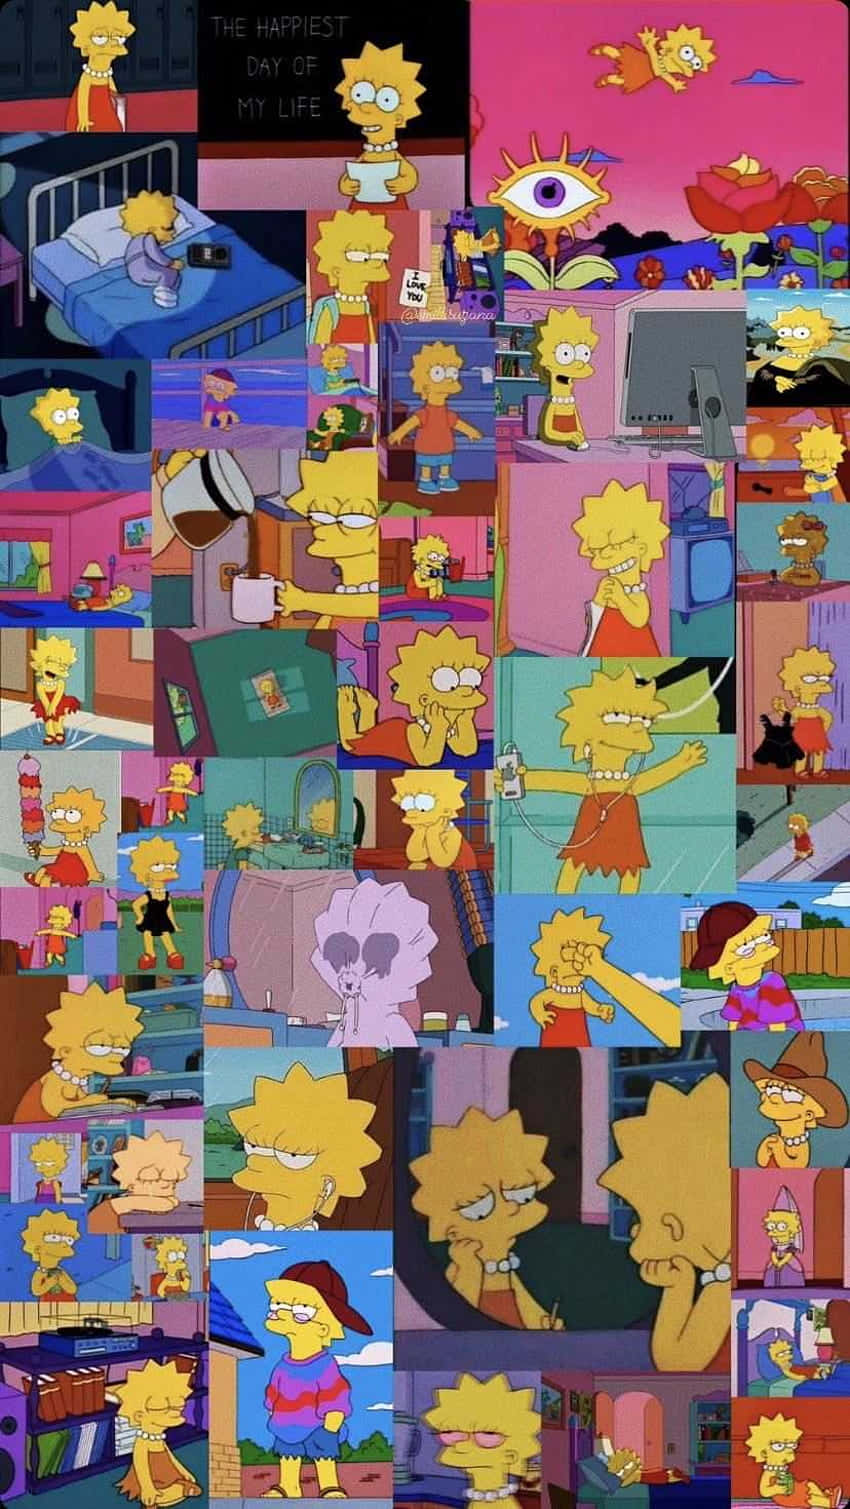 Sad Lisa and Bart Simpson edit on Vimeo